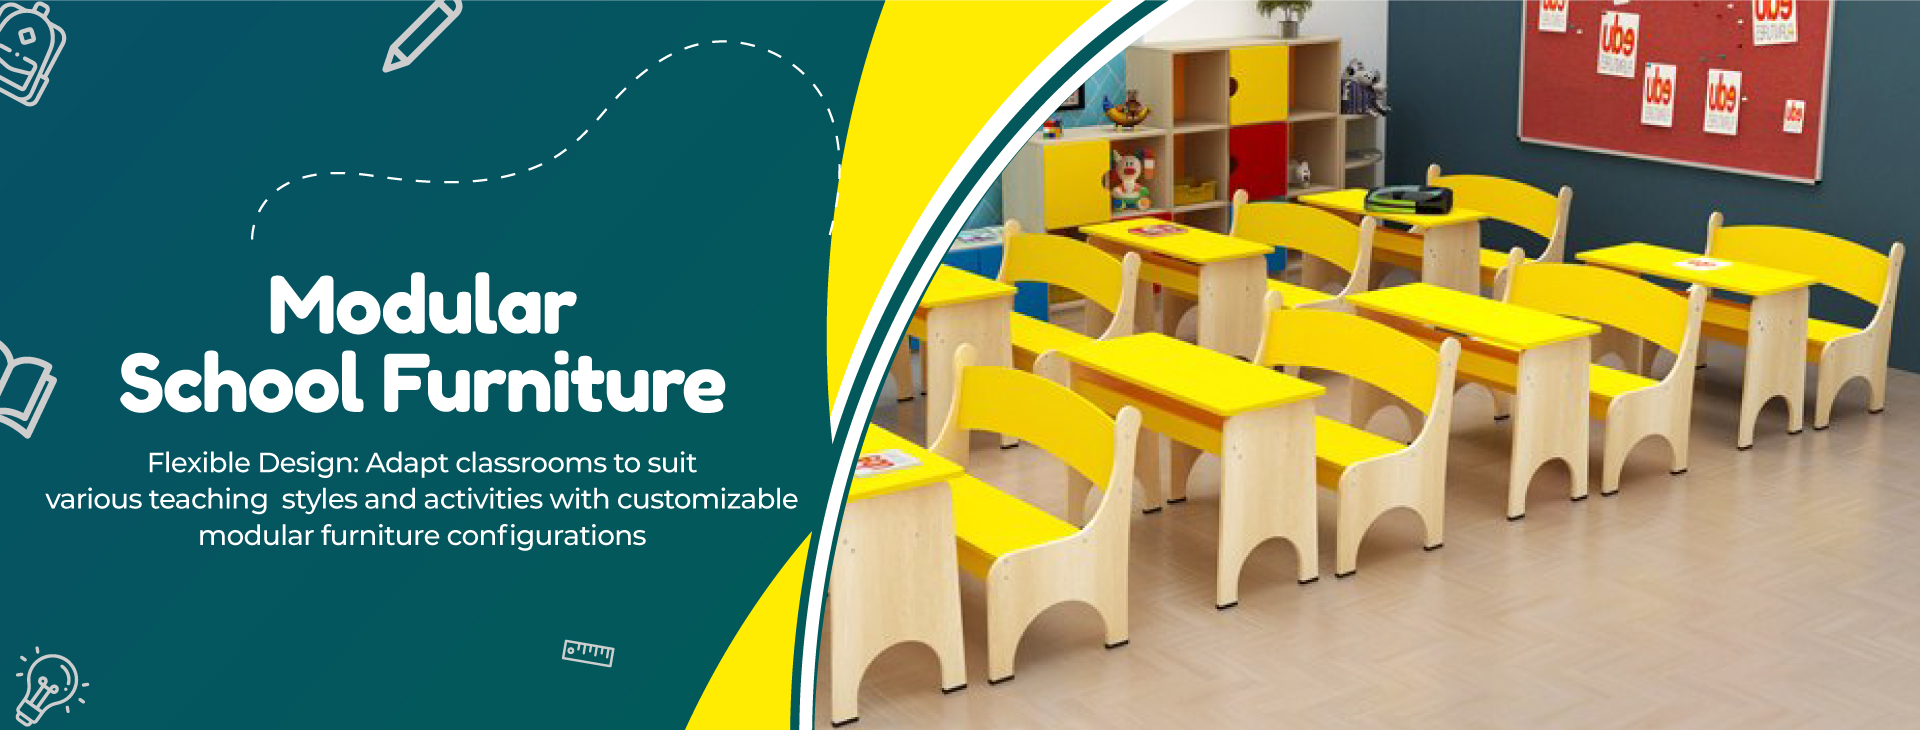 Modular School Furniture Manufacturers in Delhi